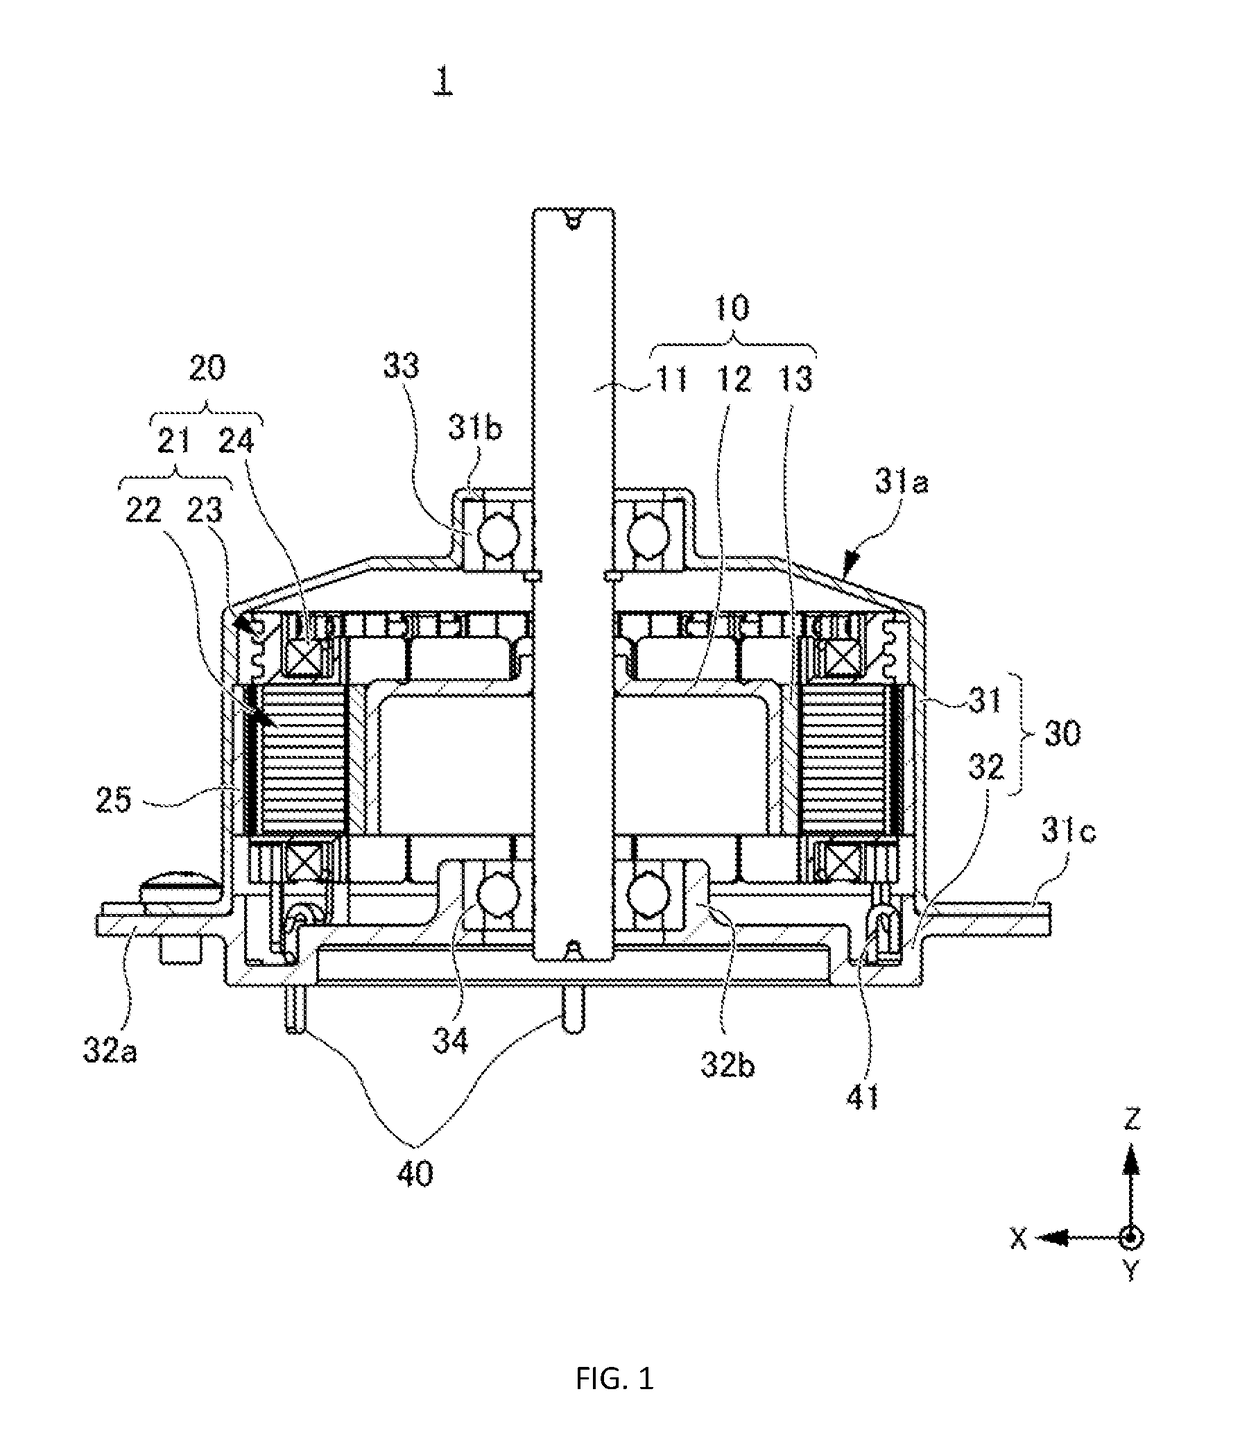 Stator of motor and inner rotor-type motor including stator